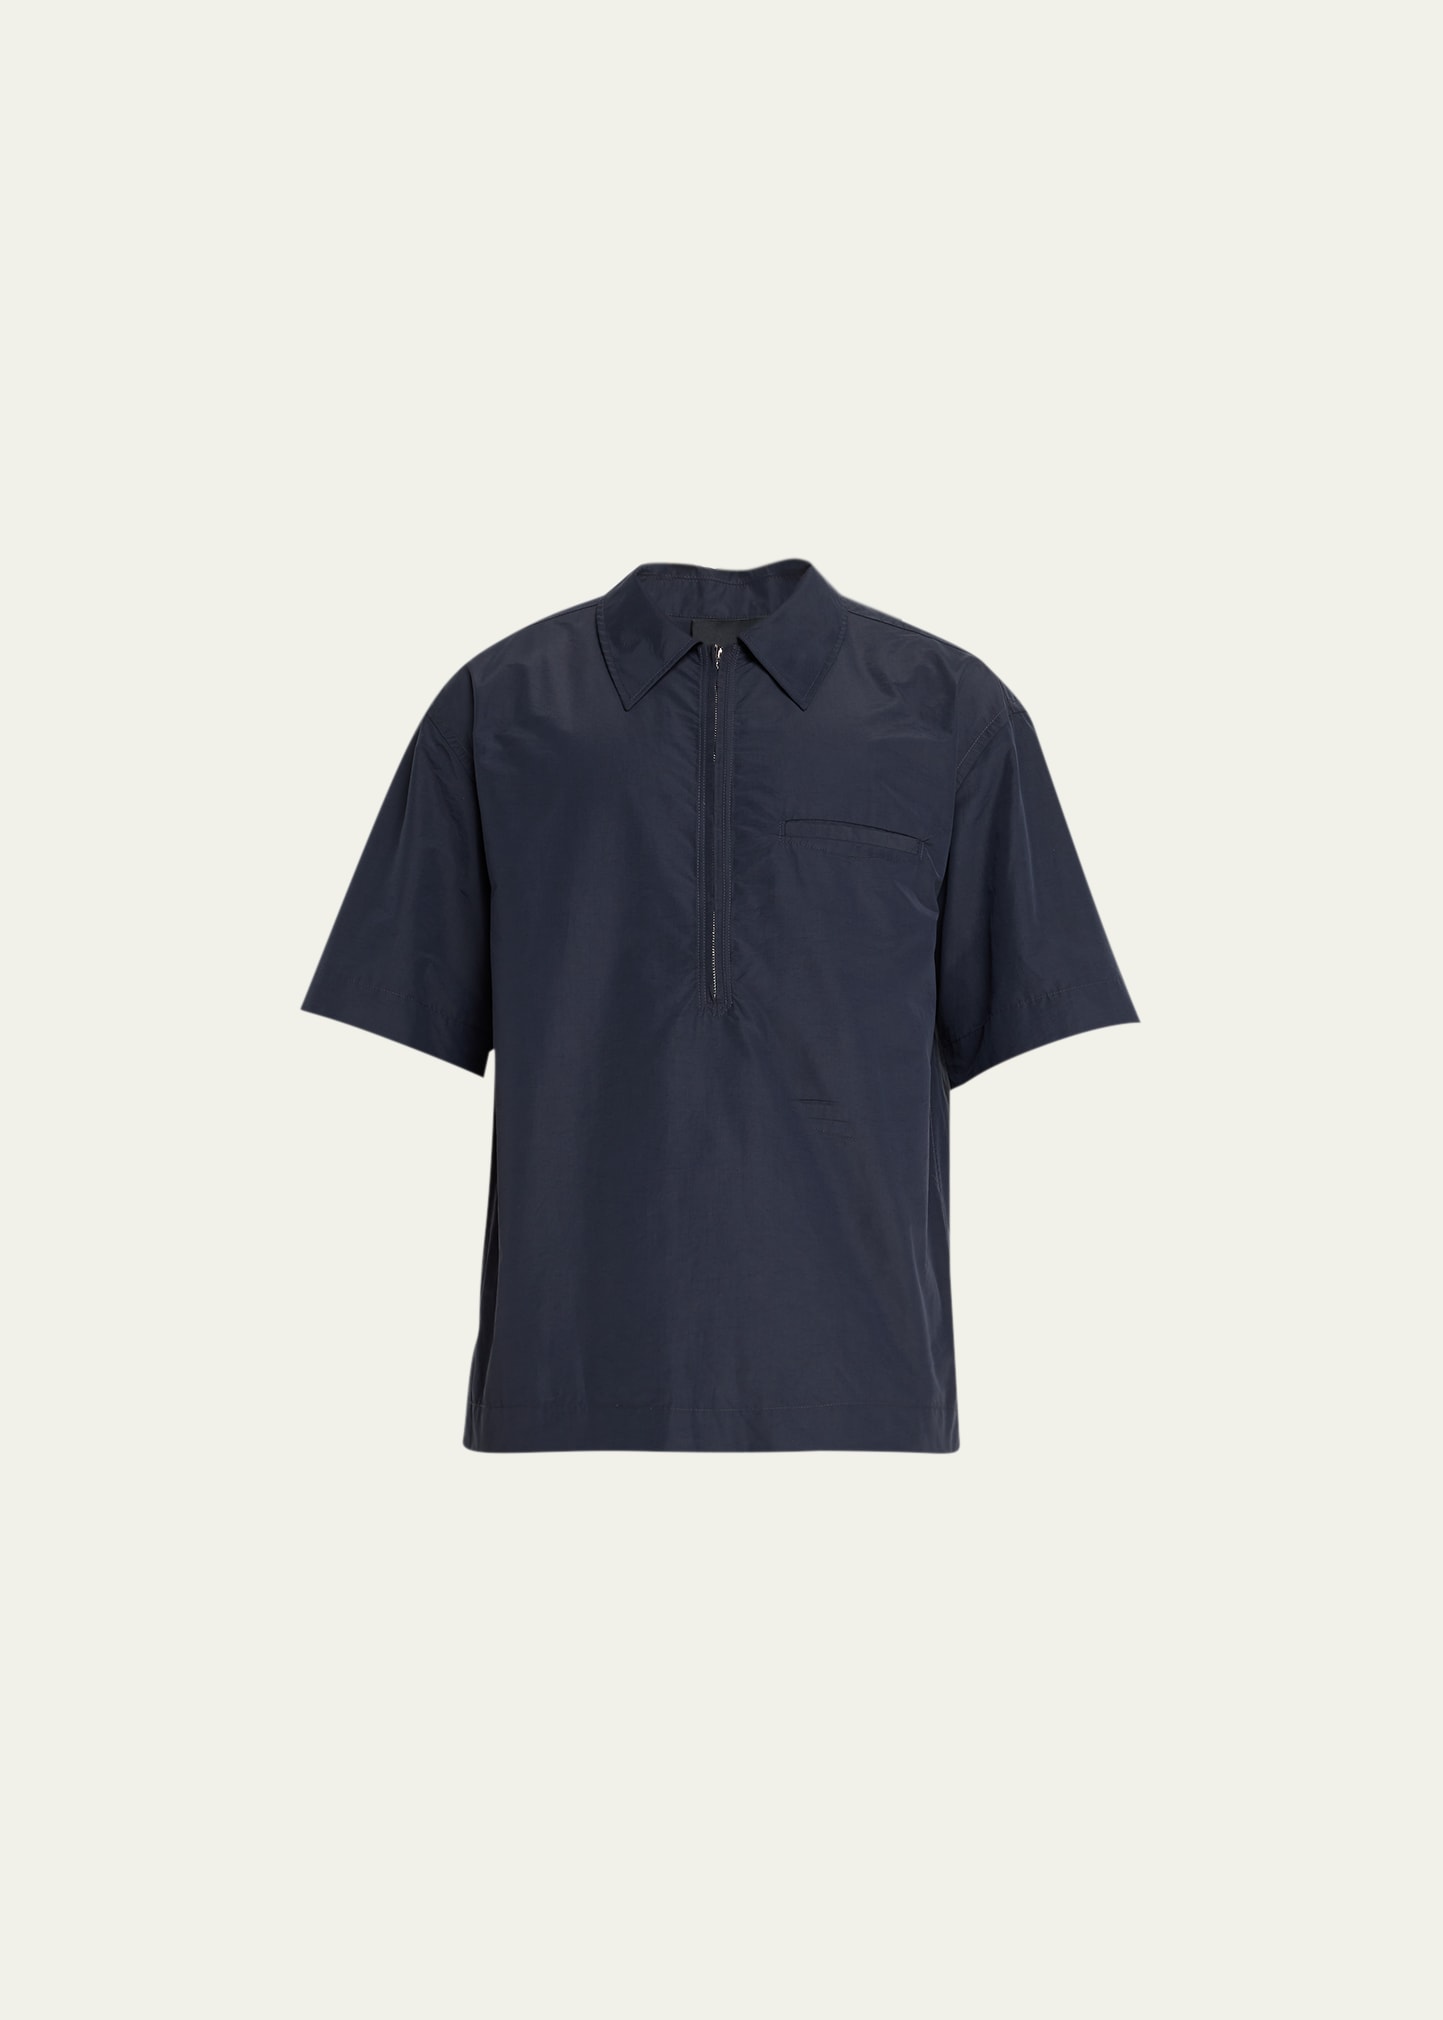 3.1 Phillip Lim / フィリップ リム Men's Half-zip Popover Shirt In Black